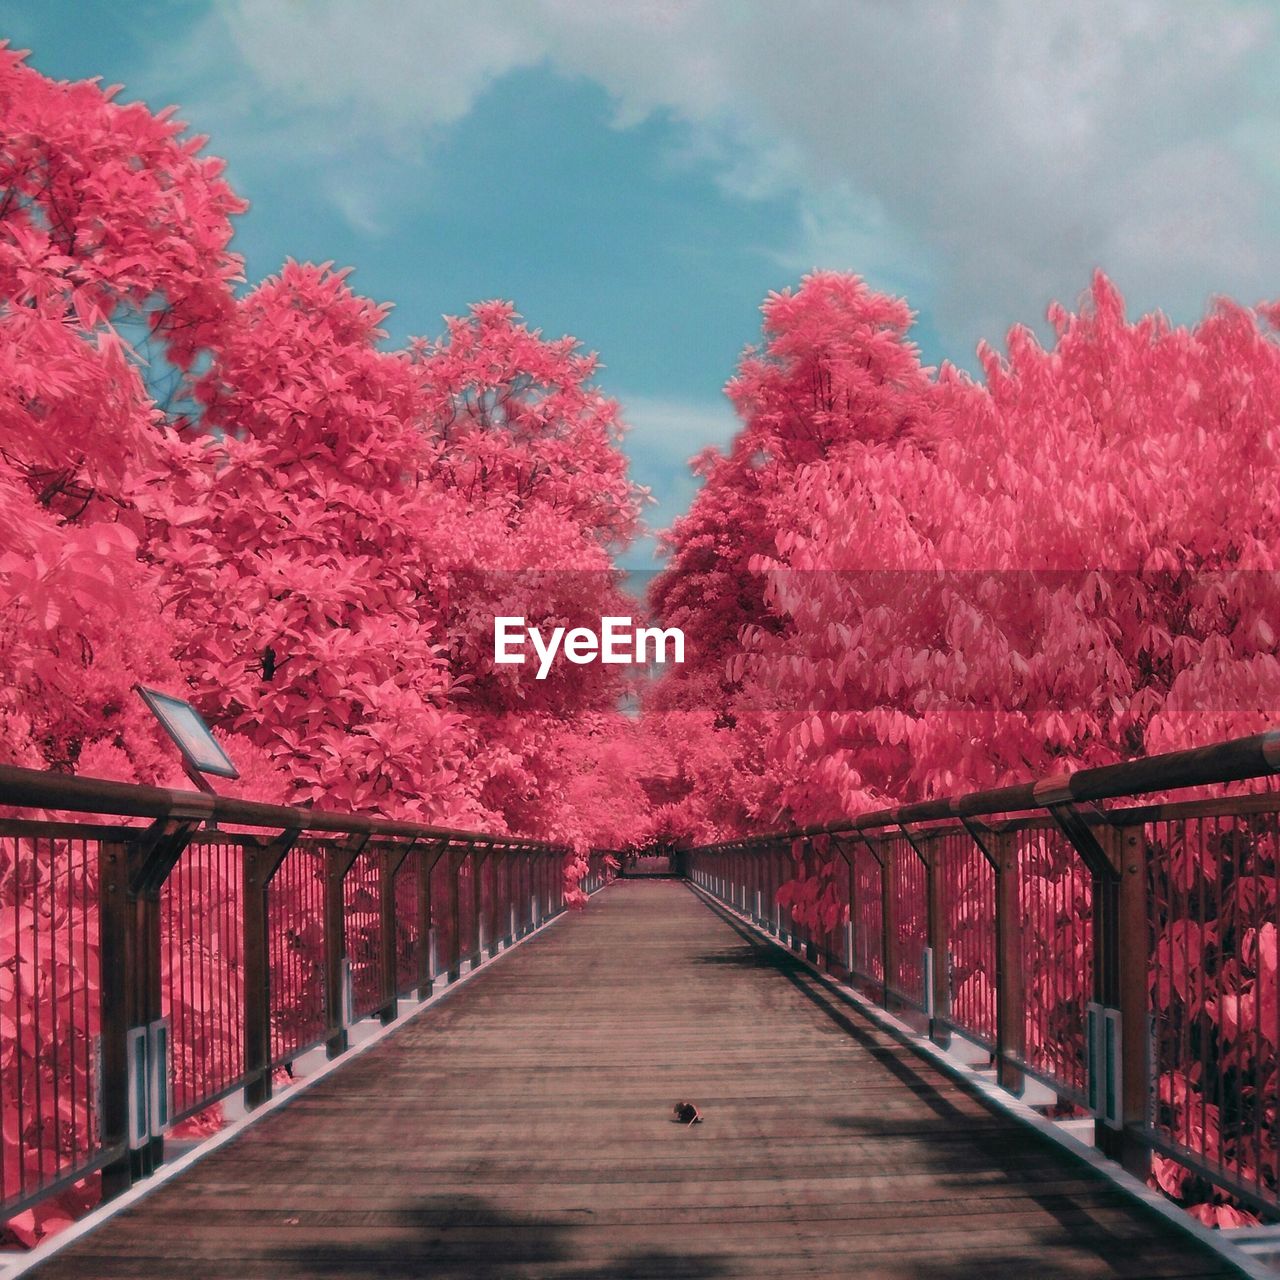 Walkway bridge by pink trees in park against sky